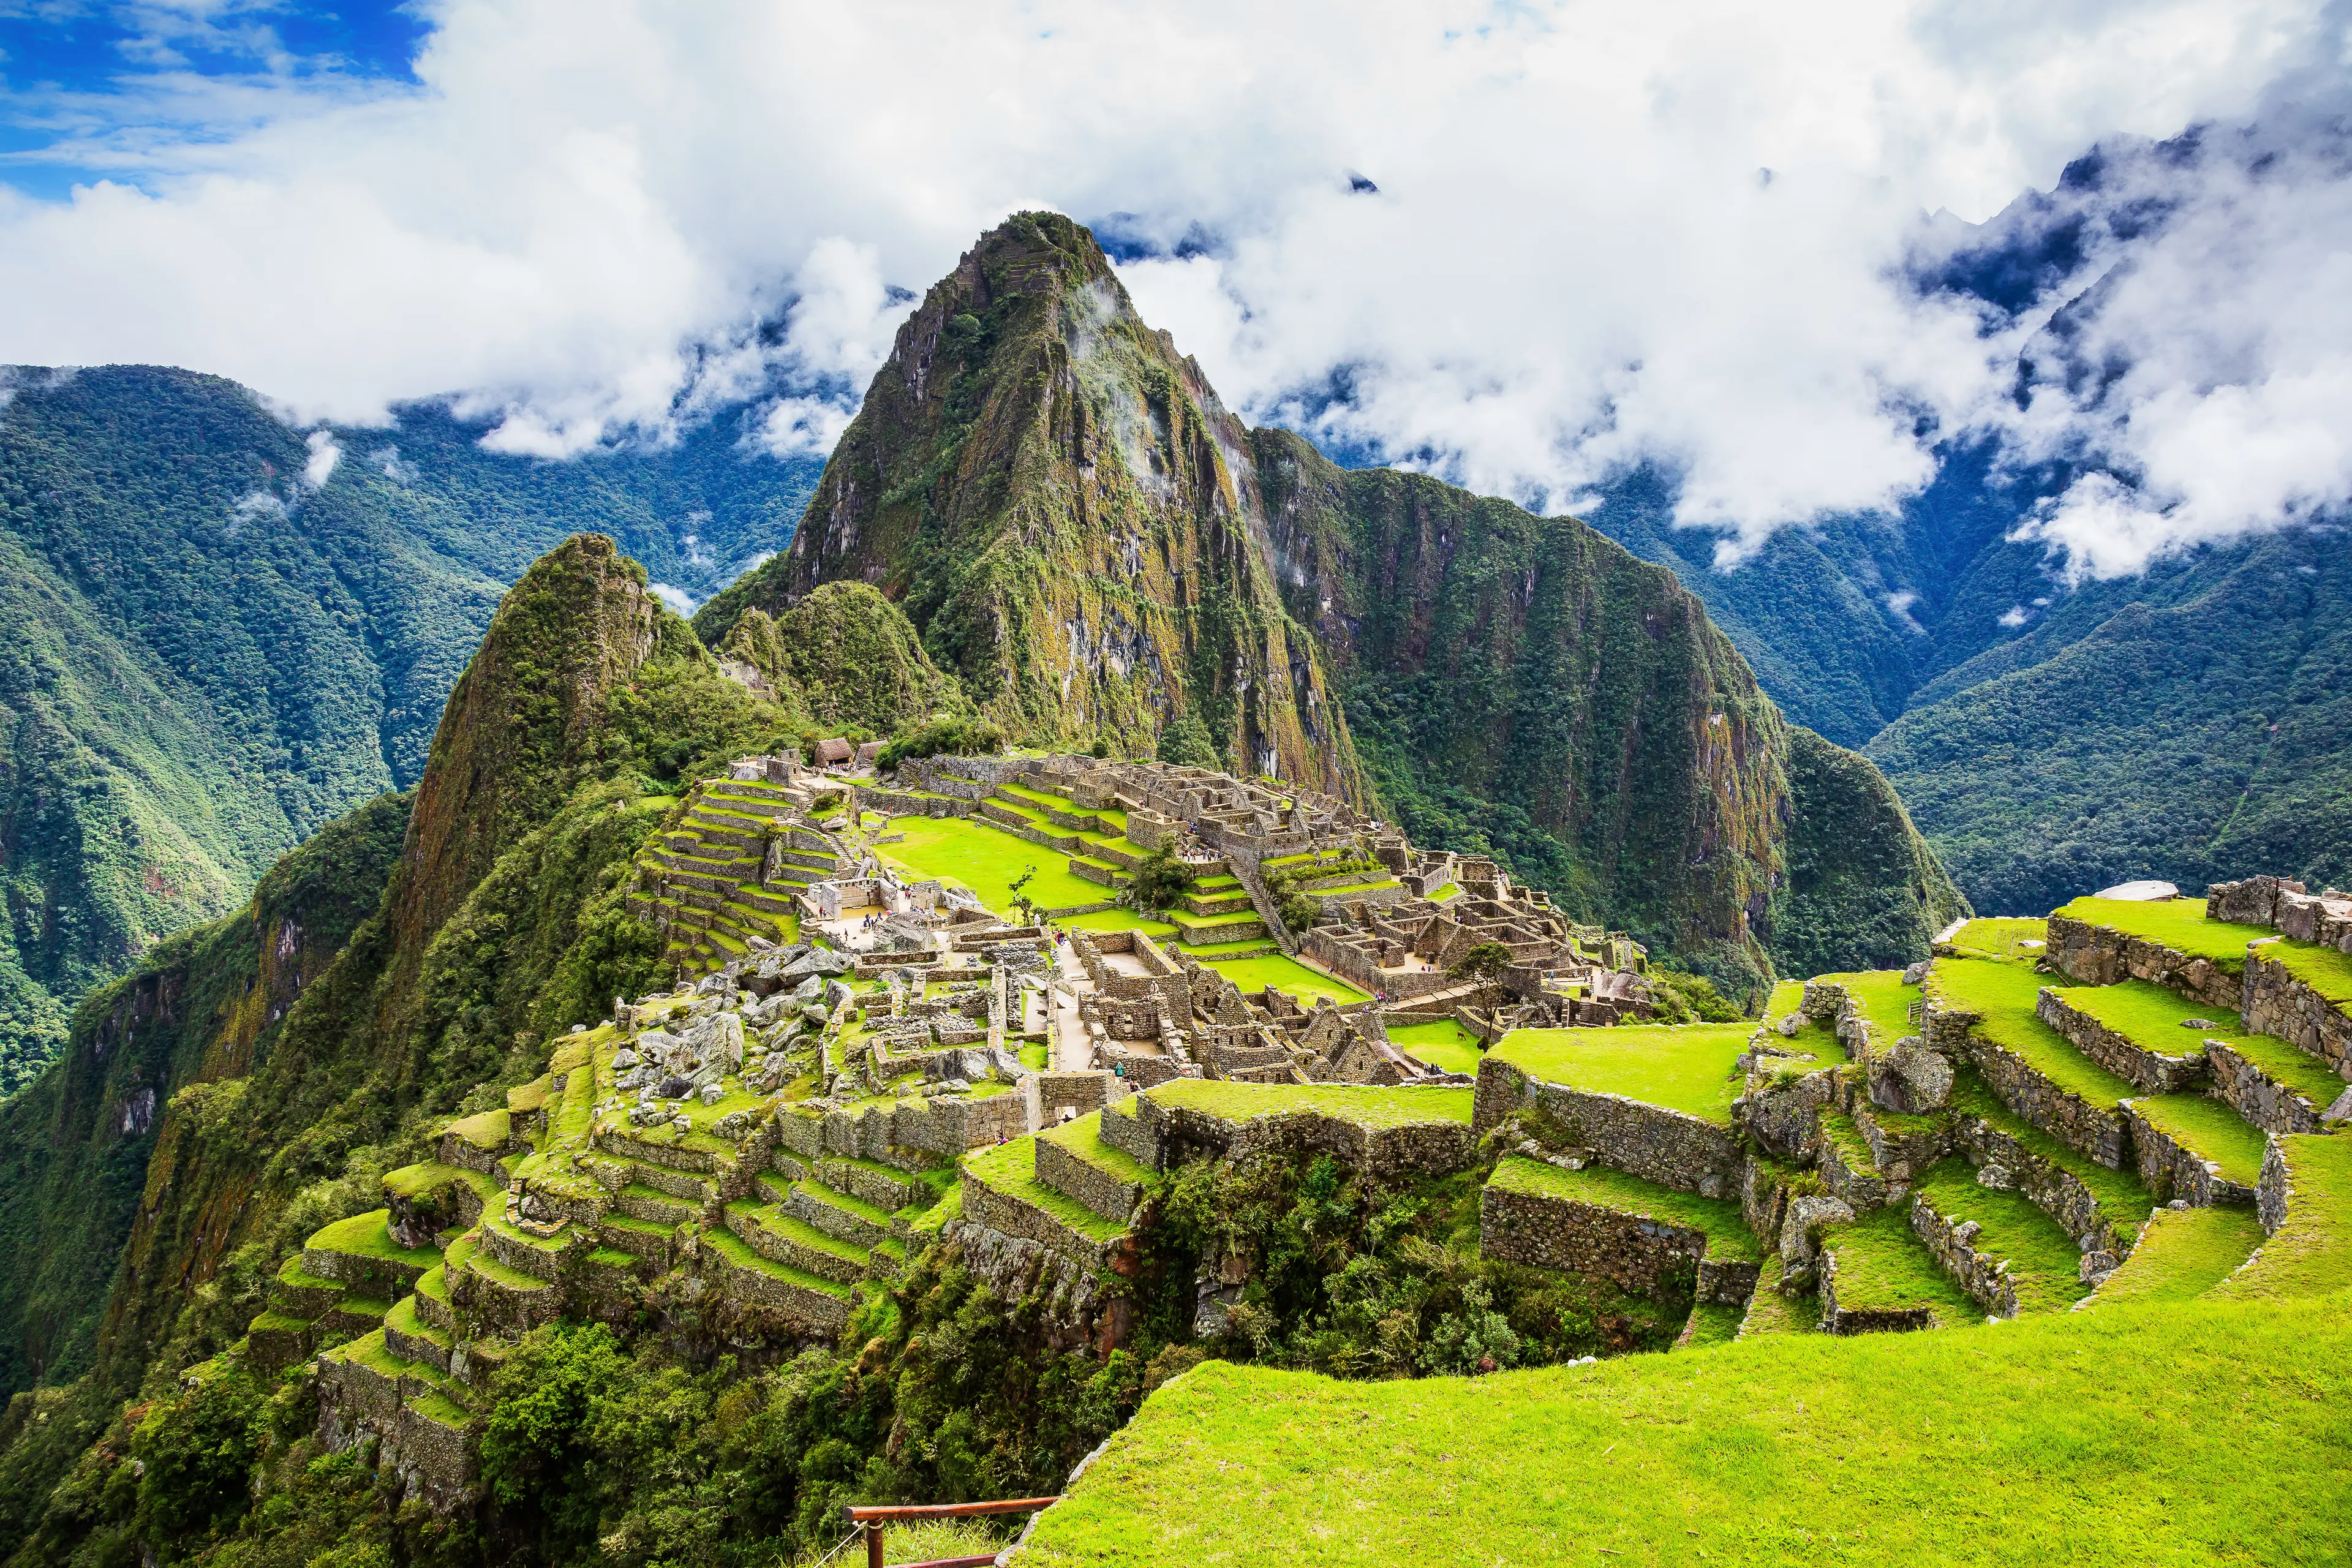 2-Day Unforgettable Journey to Machu Picchu, Peru